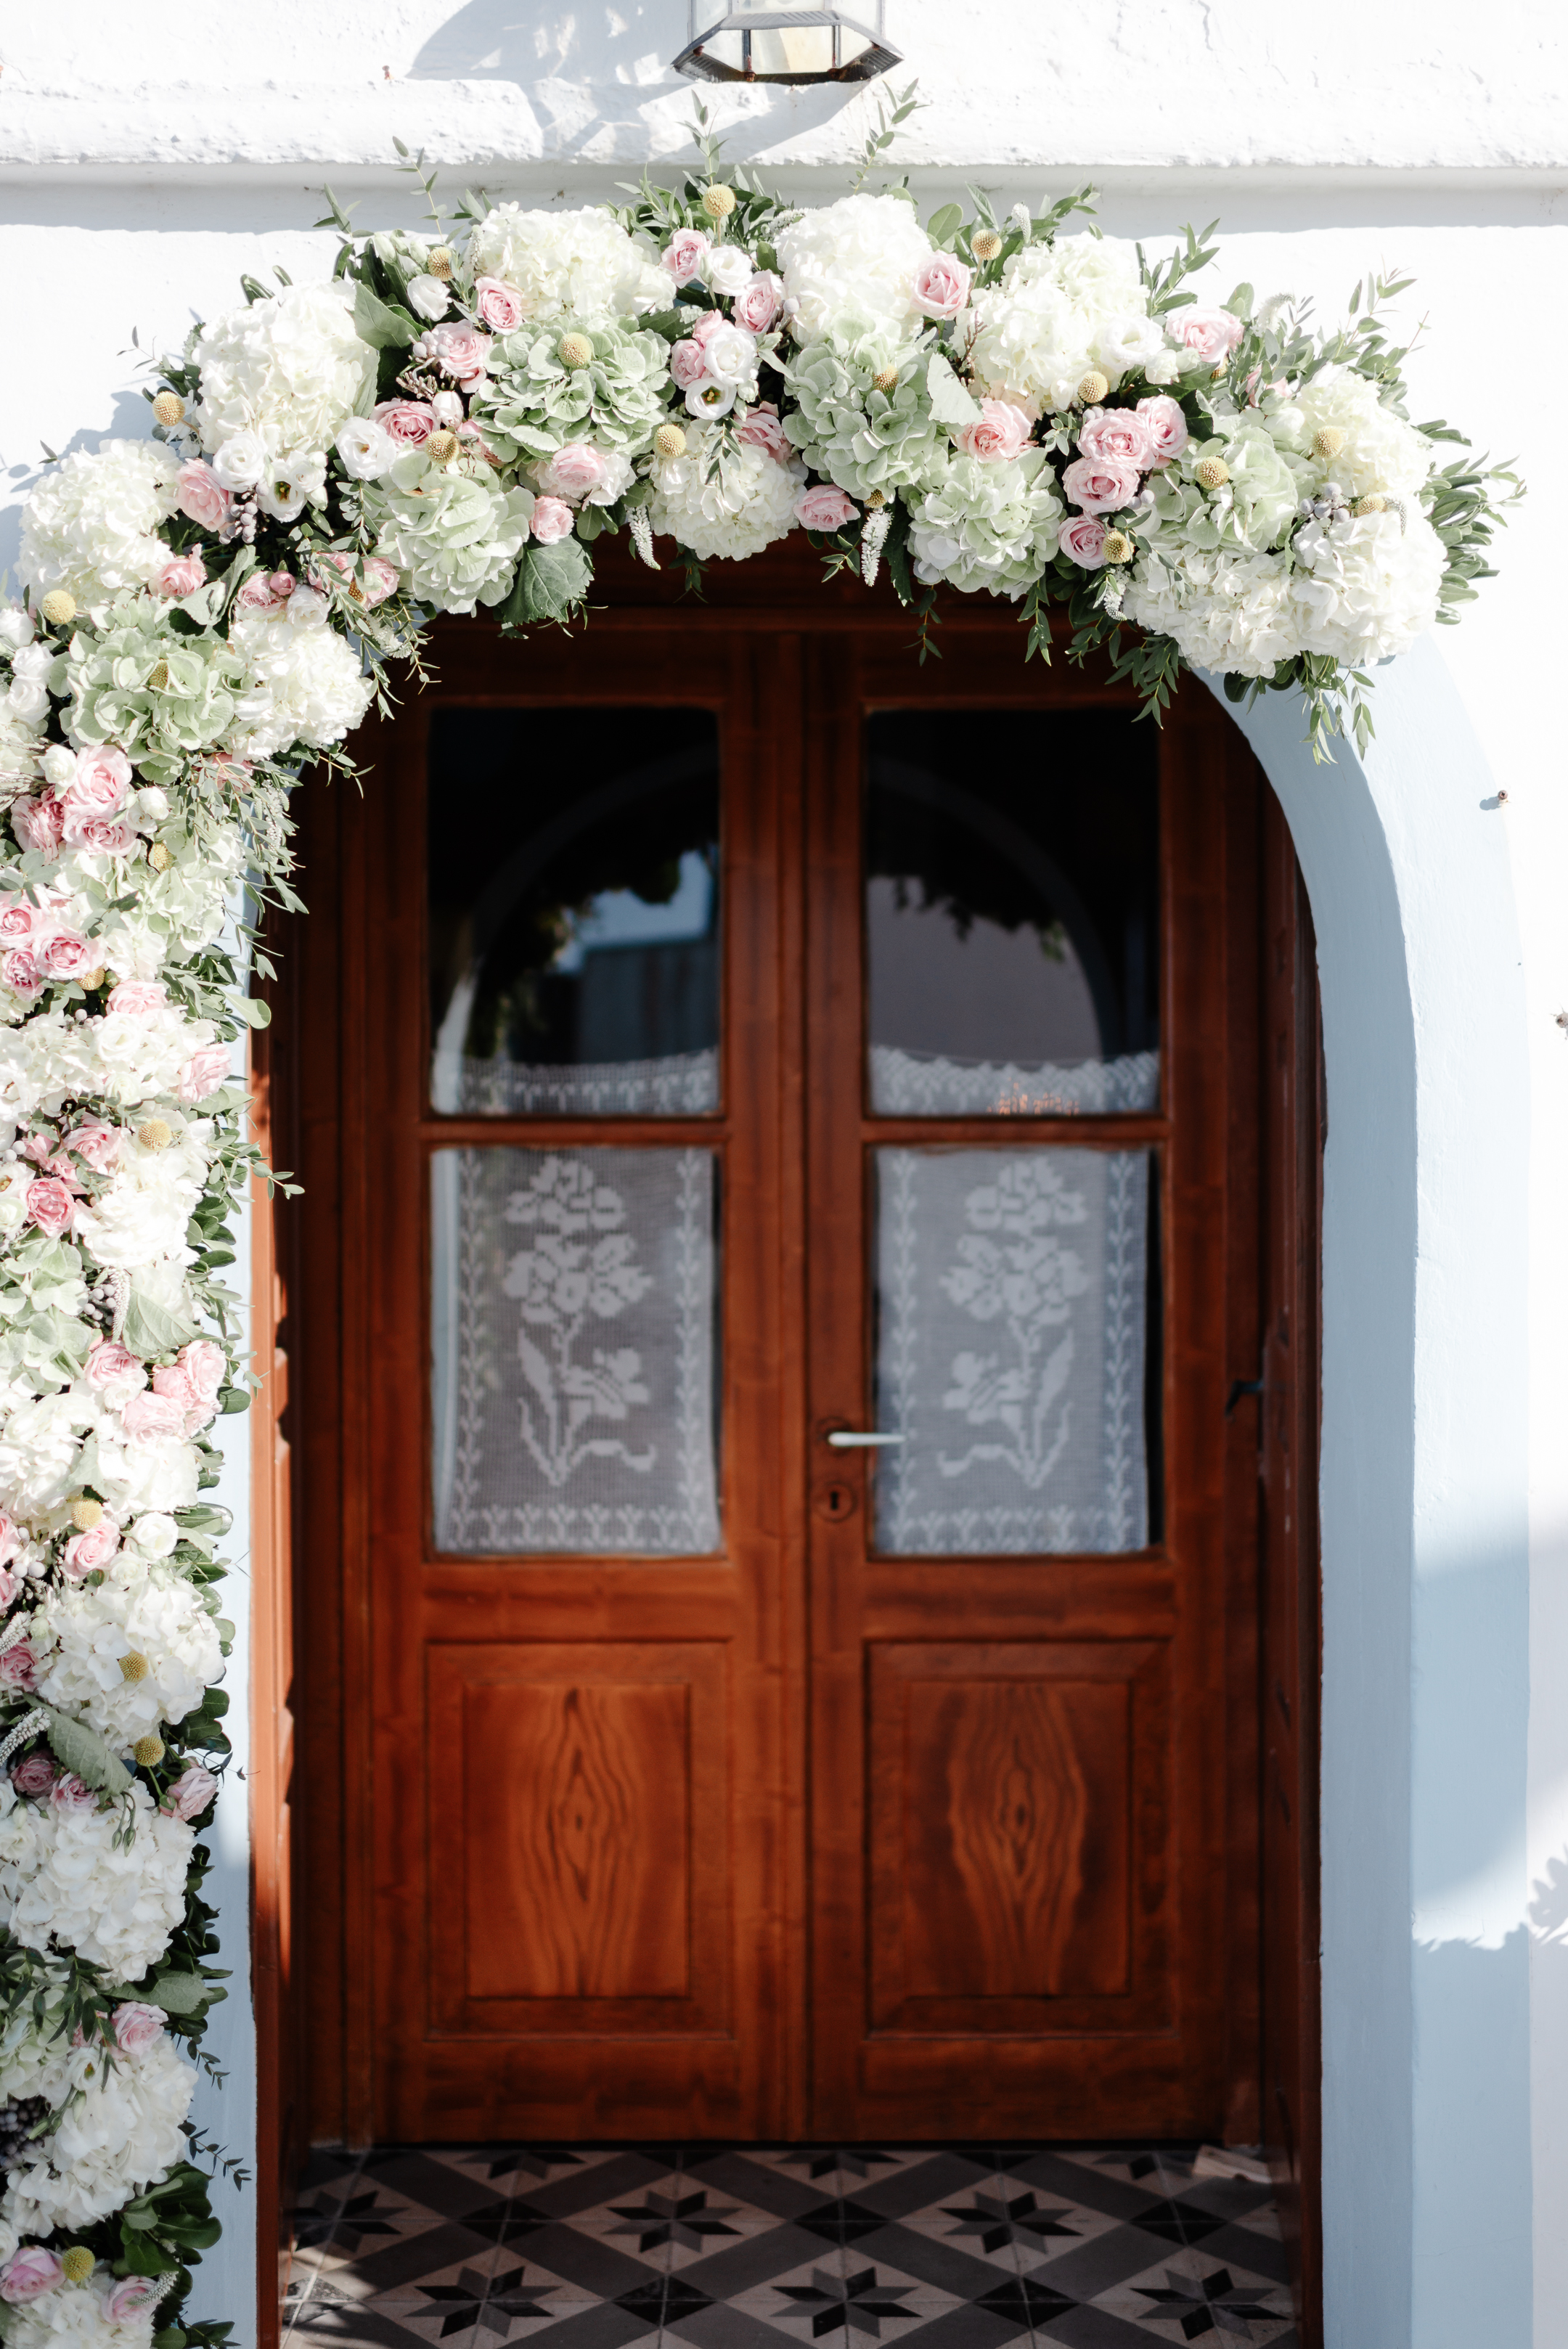 Ρομαντικός στολισμός εισόδου εκκλησίας με λουλουδένια γιρλάντα